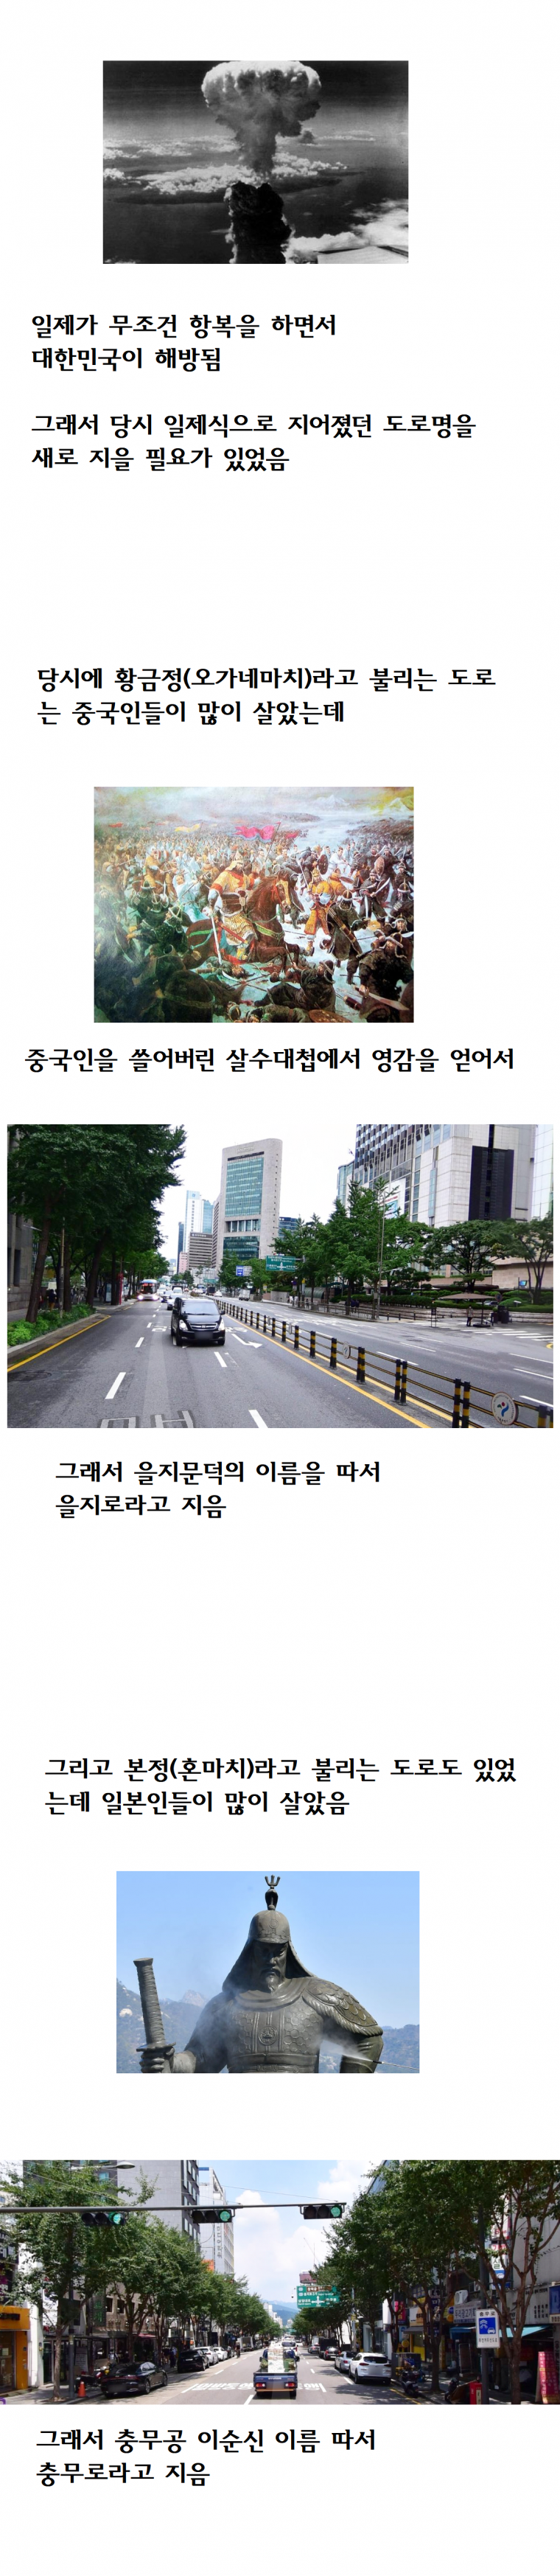 노빠꾸 서울 도로명 유래